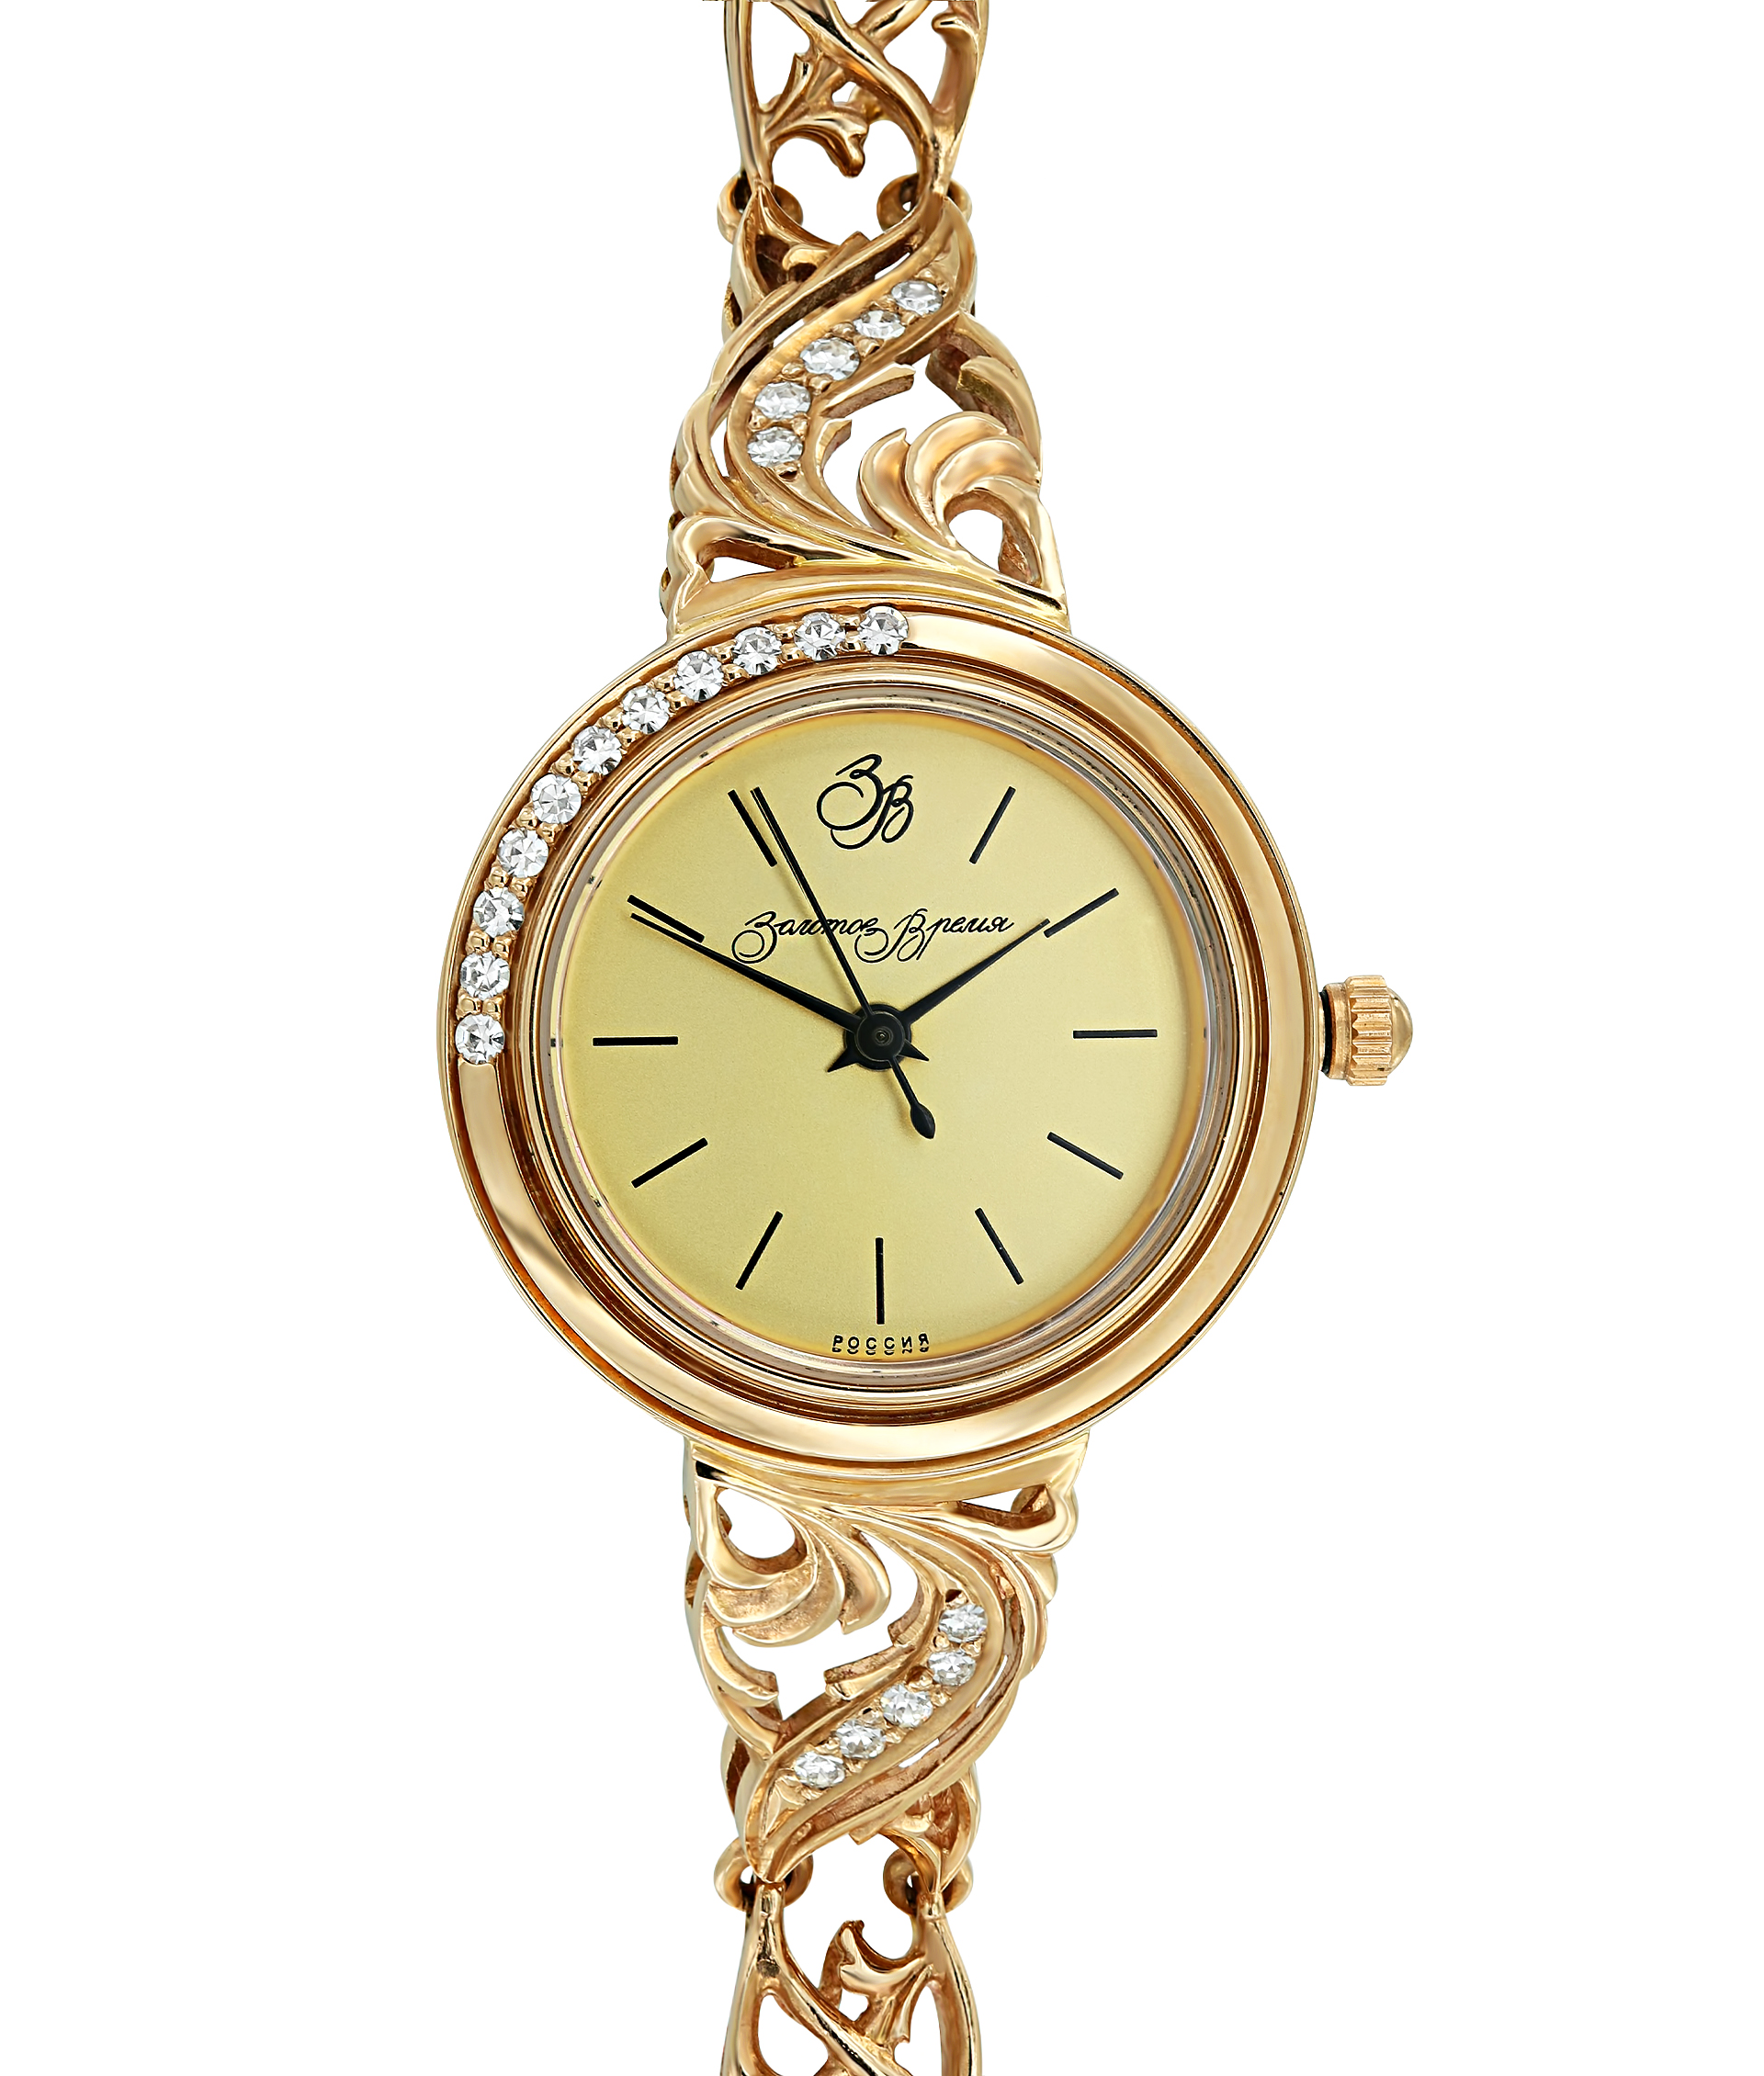 Золотые часы с золотым браслетом 585. Голд тайм часы золотые 1997 585. Часы Голд тайм золотые с бриллиантами. Золотые часы Голд тайм 750 пробы.